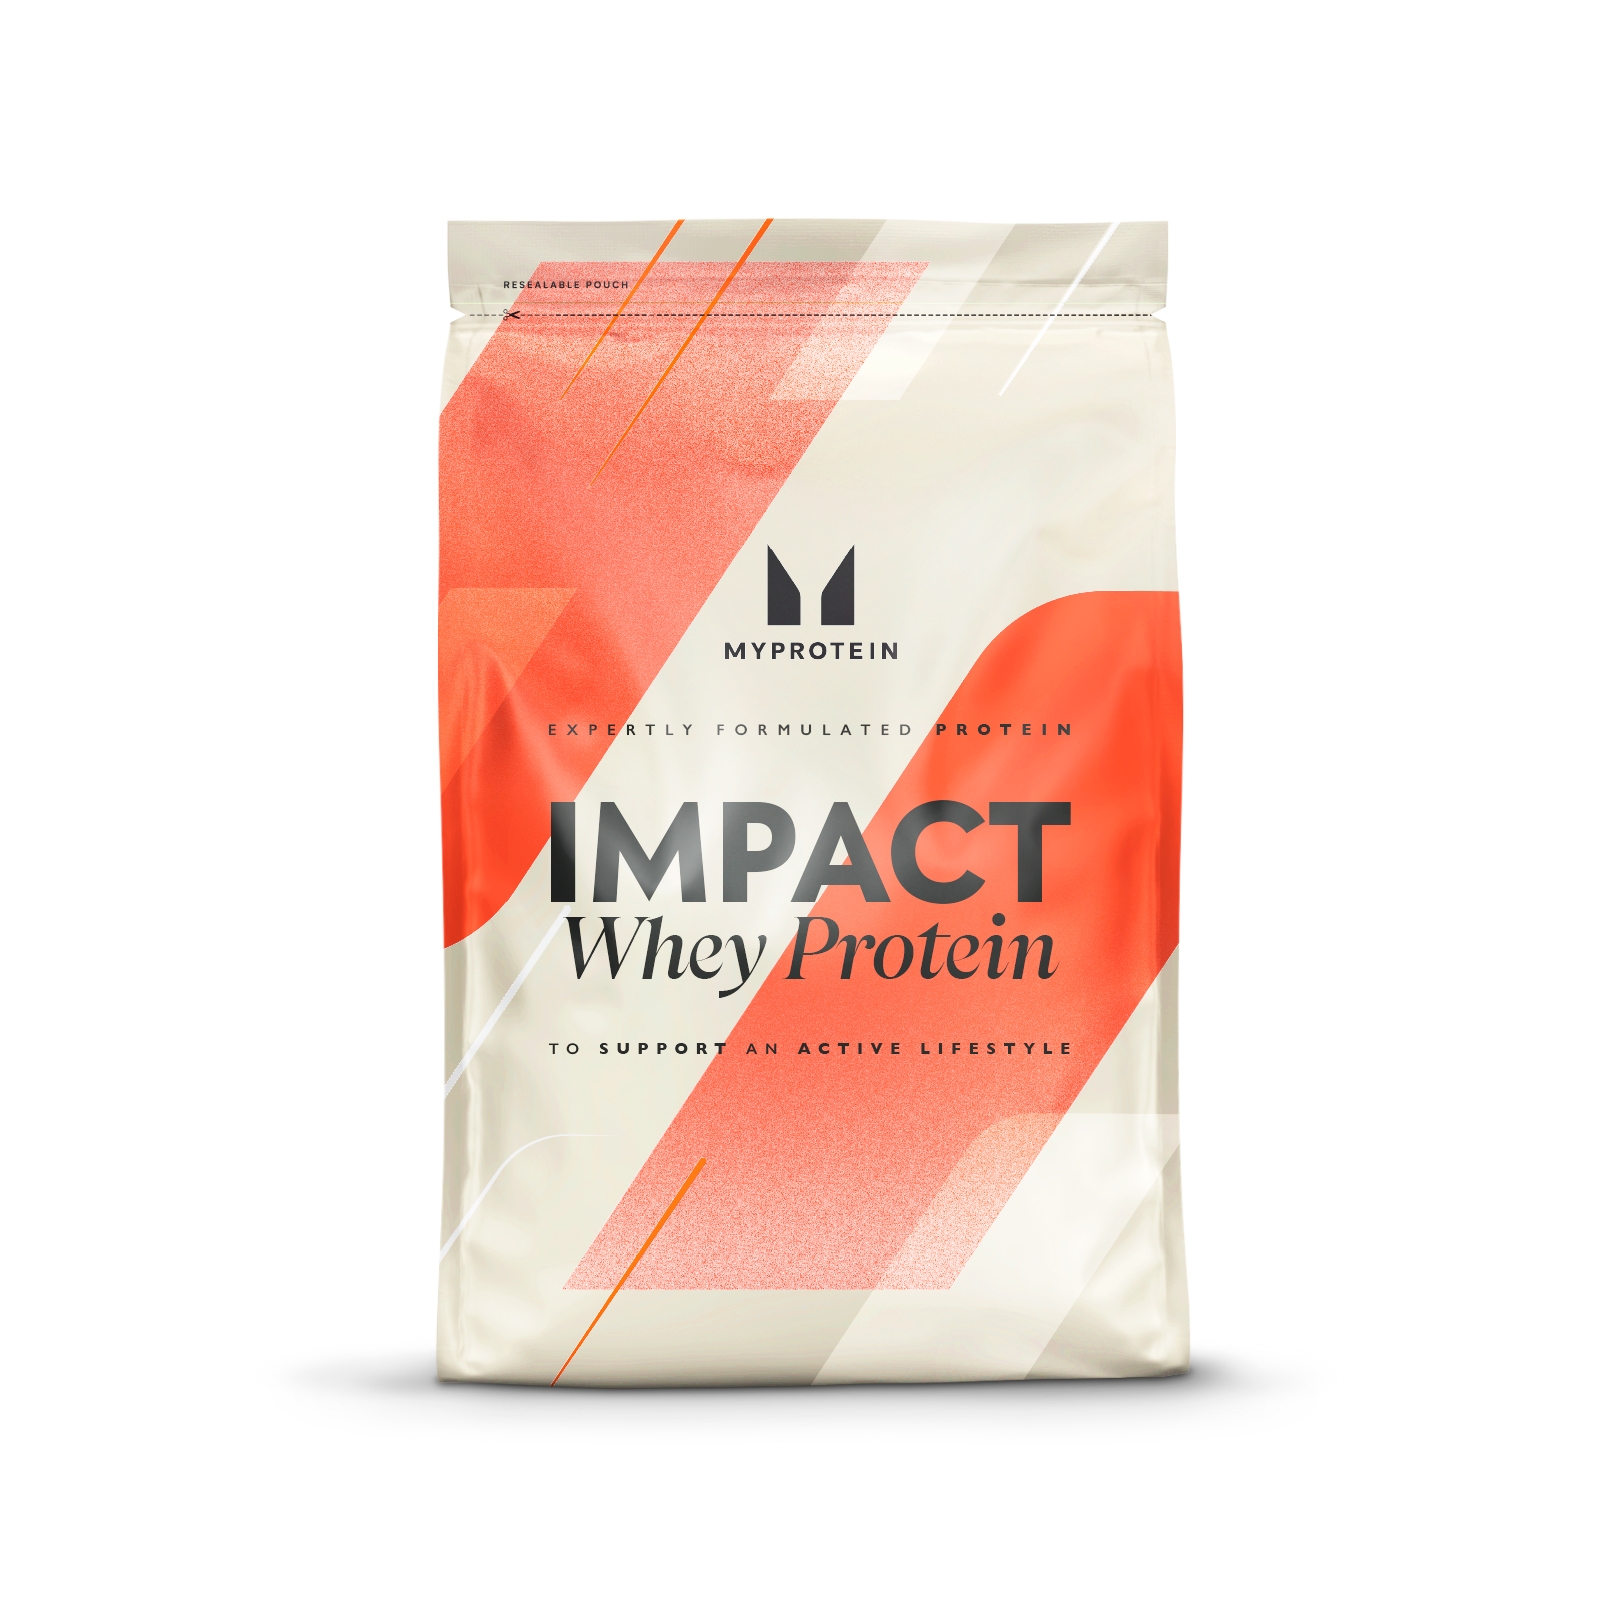 Impact whey protein - Edition Limitée Tarte aux pommes et Crème anglaise